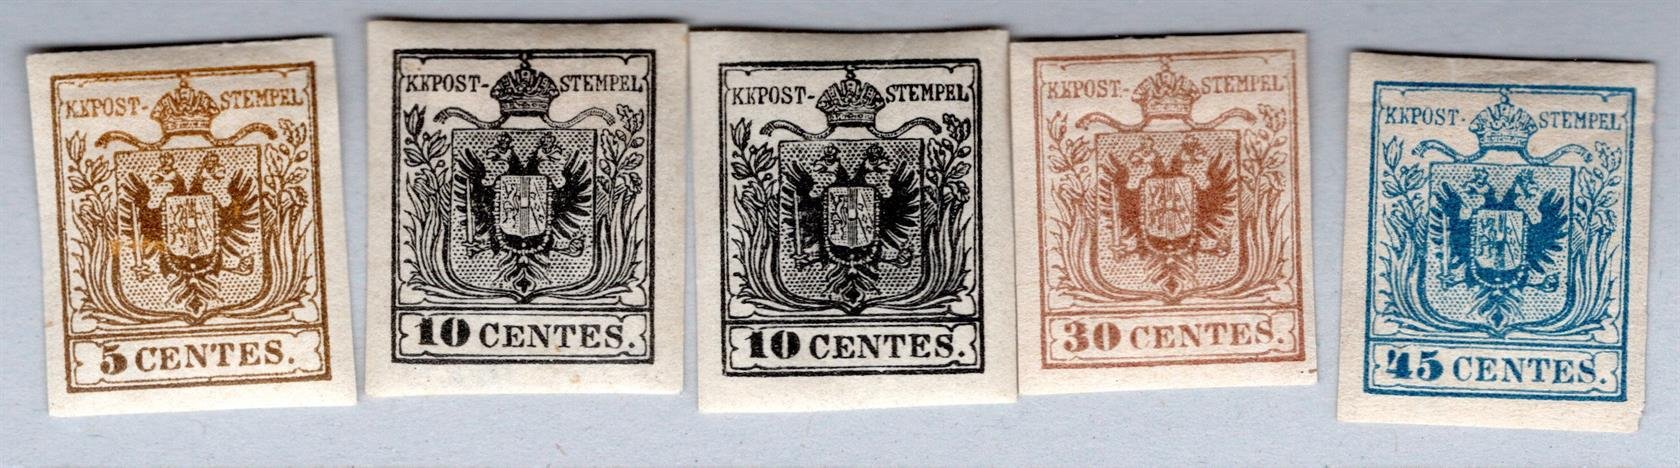 Rakousko  1884-1894 NOVOTISKY I. EMISE / sestava 5 novotisků, znak 5 Cts hnědá, 2x 10 Cts černá, 30 Cts hnědá a 45 Cts modrá; 1x označeno Neudruck, zajímavá sestava